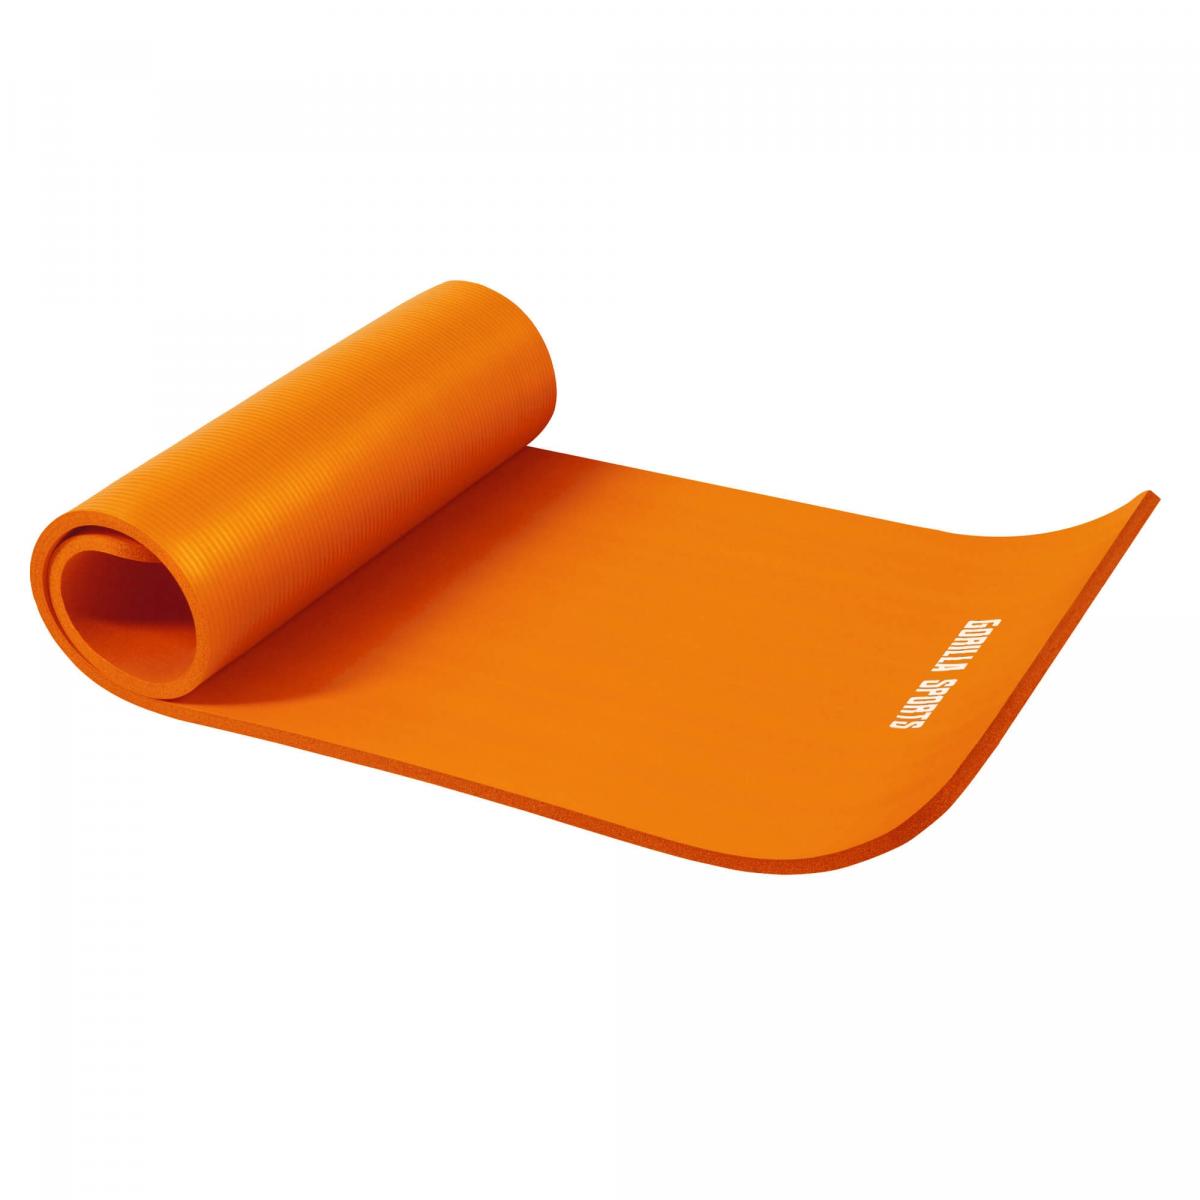 Petit tapis de yoga en mousse - 190 x 60 x 1,5 cm (Yoga - Pilates - sport Ã domicile) Orange